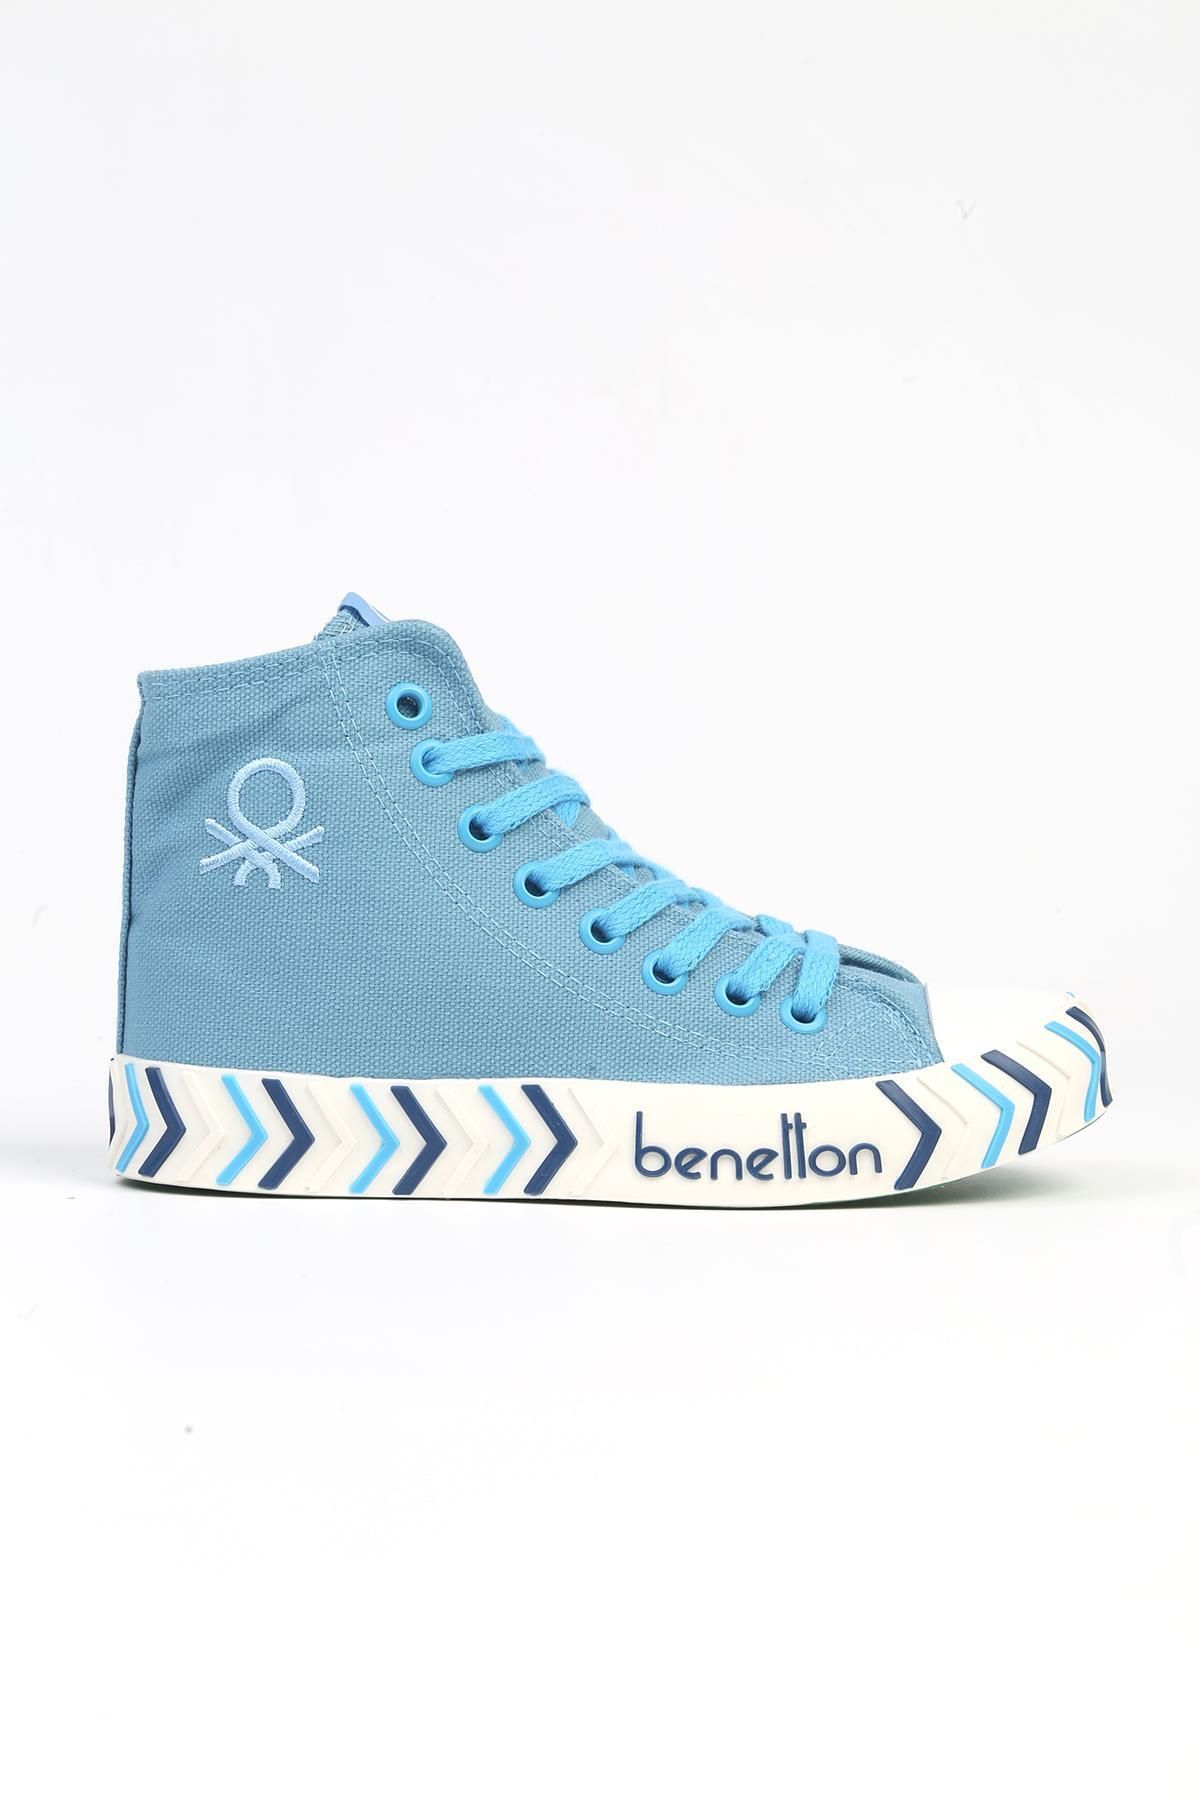 Benetton ® | BN-90625-3374 Acik Mavi - Kadın Spor Ayakkabı